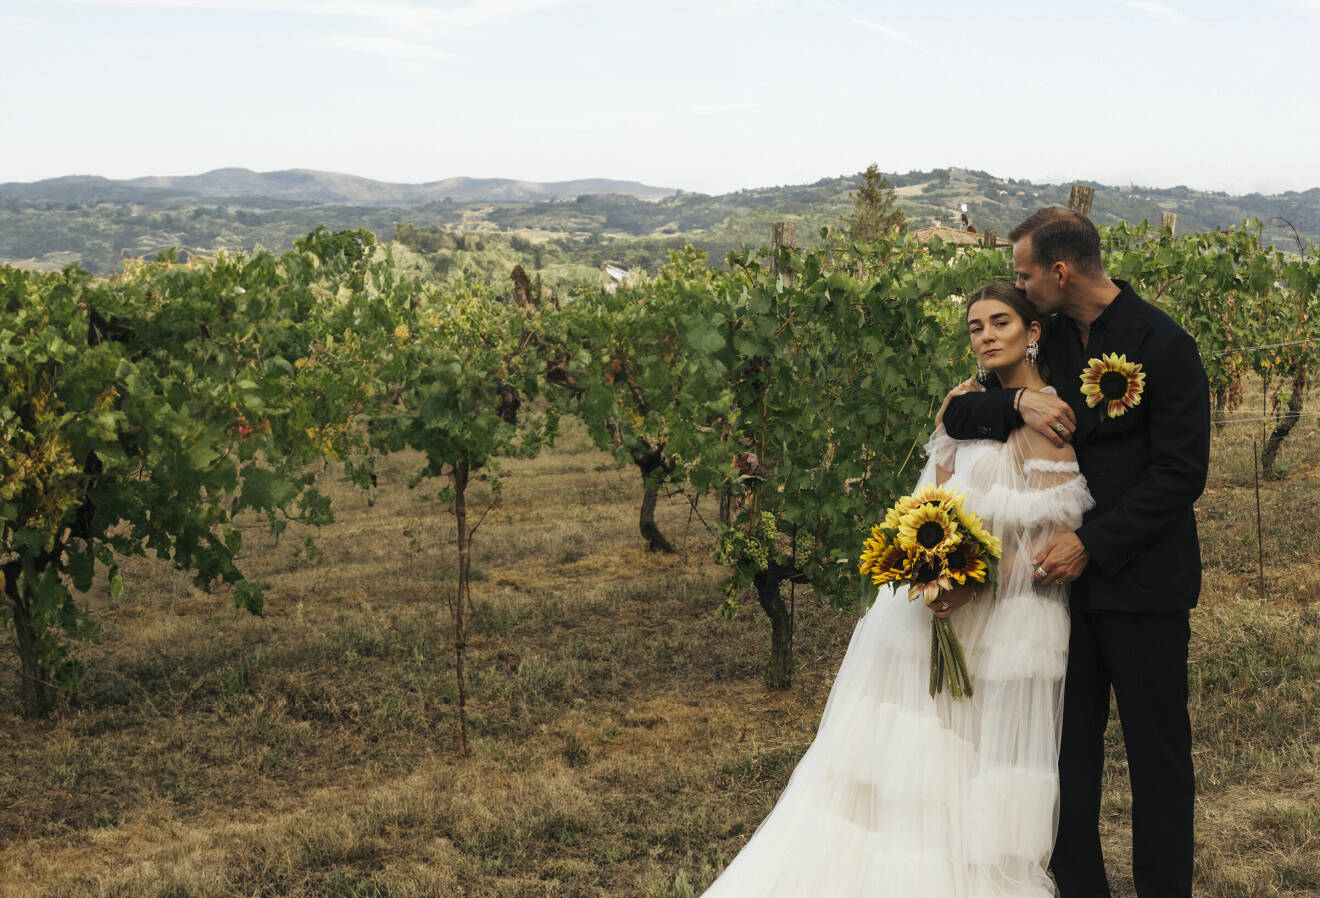 Linn och Felix gifte sig i Piemonte, Italien